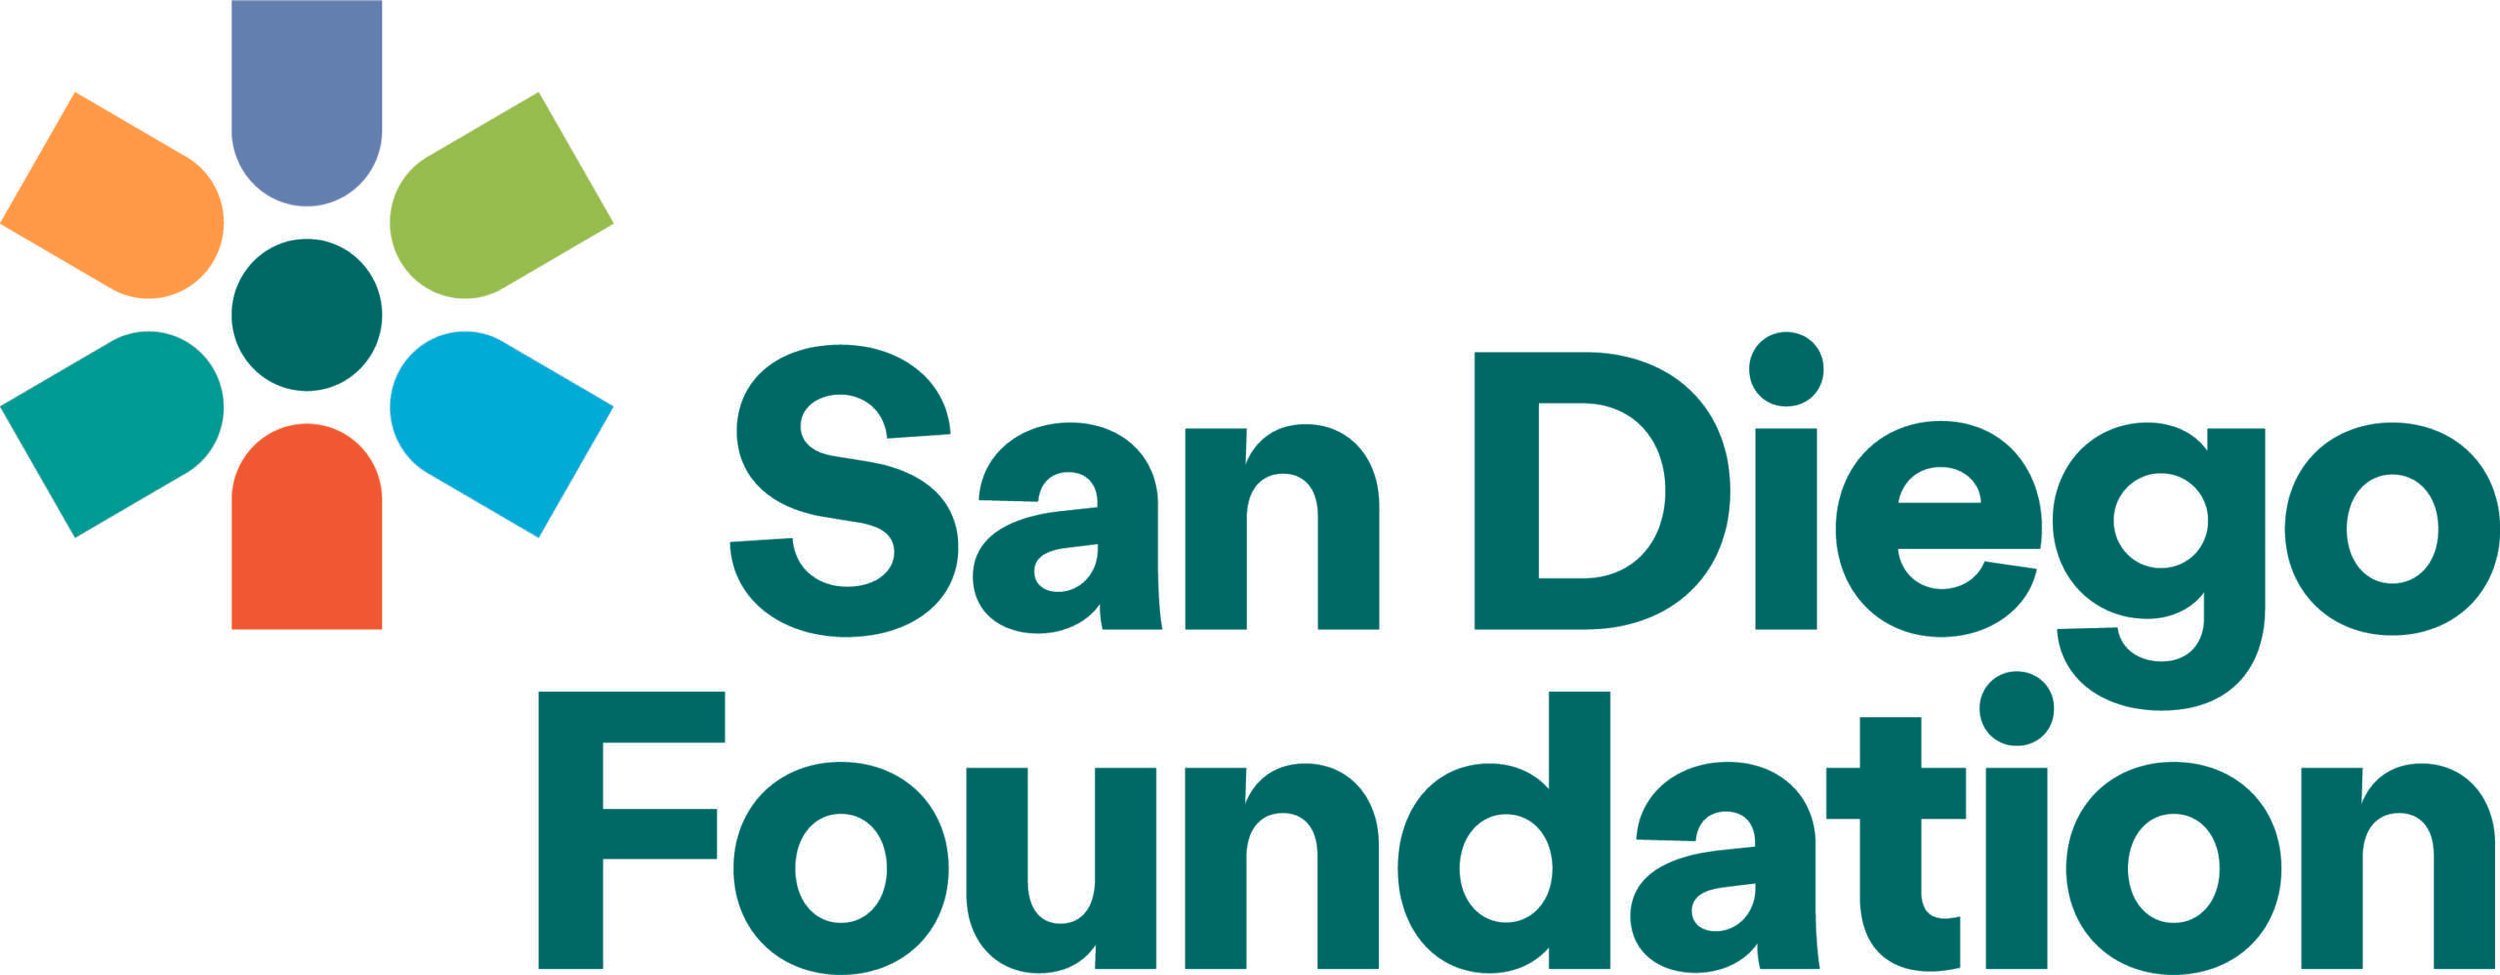 Logo - The San Diego Foundation.jpg